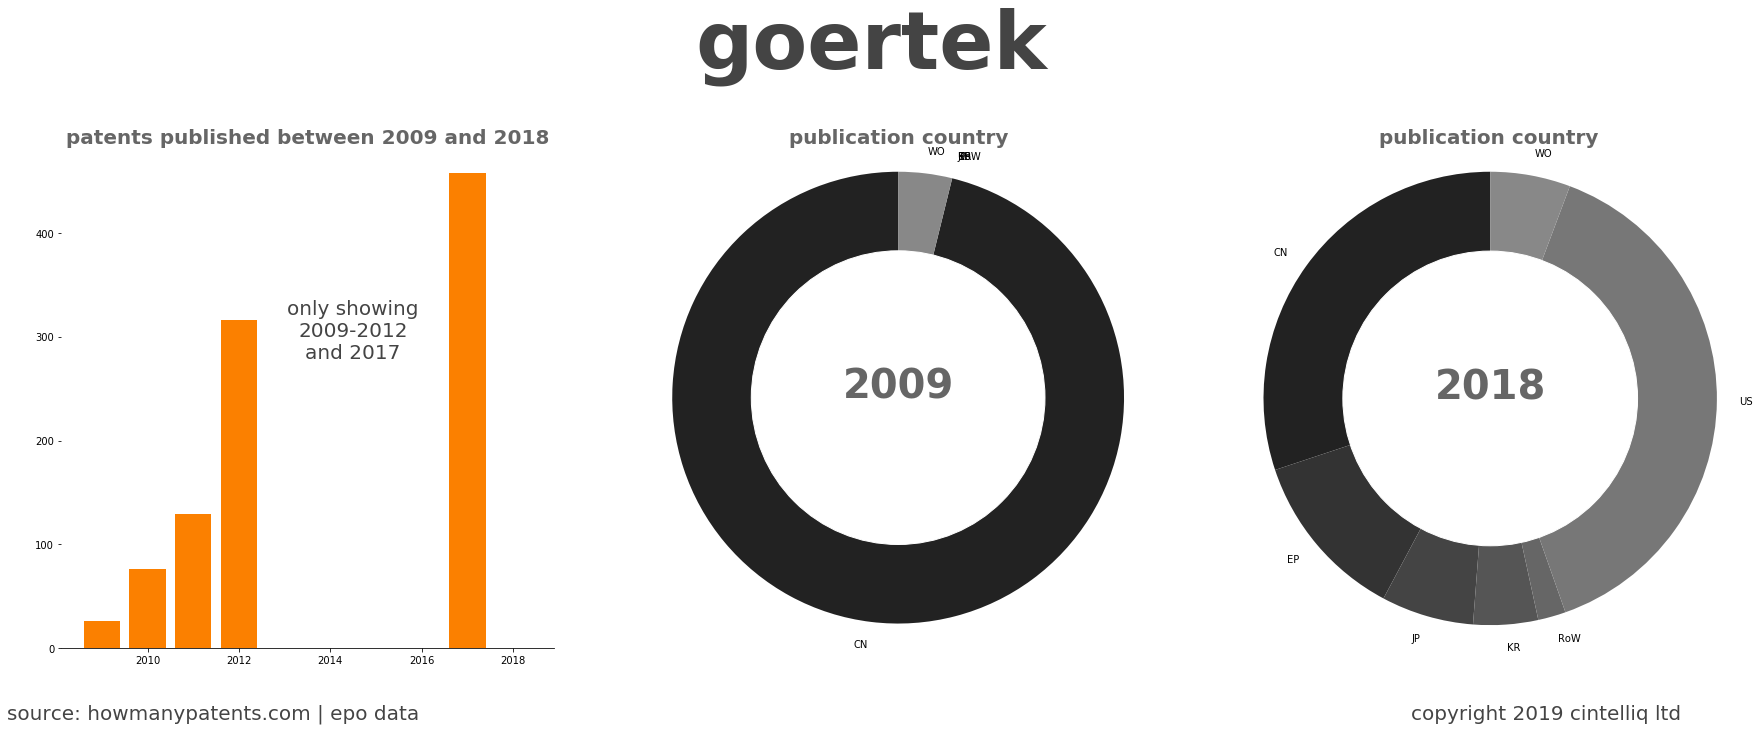 summary of patents for Goertek